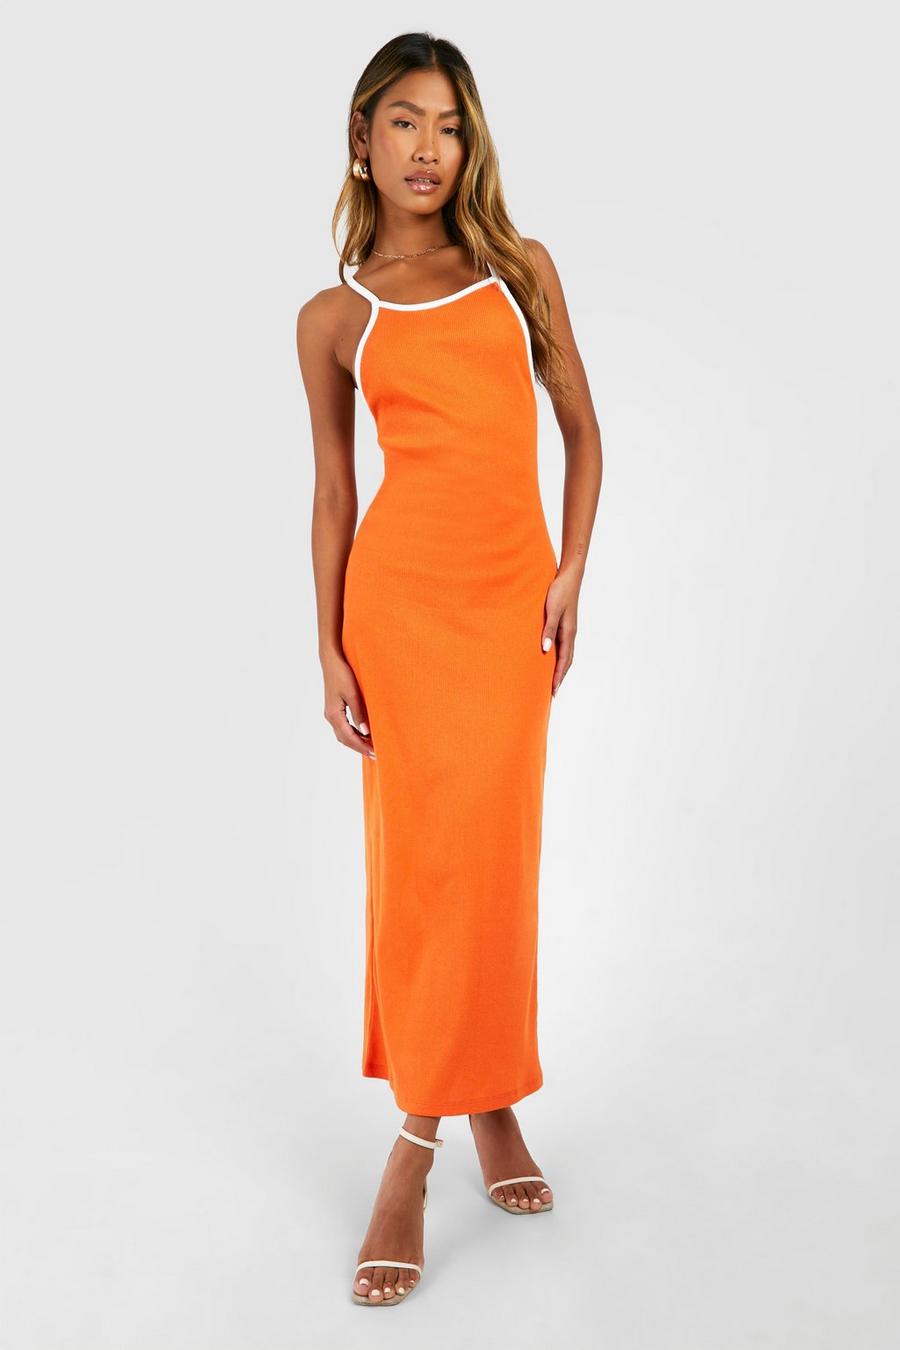 Orange Contrast Binding Low Scoop Racer Midaxi Dress image number 1